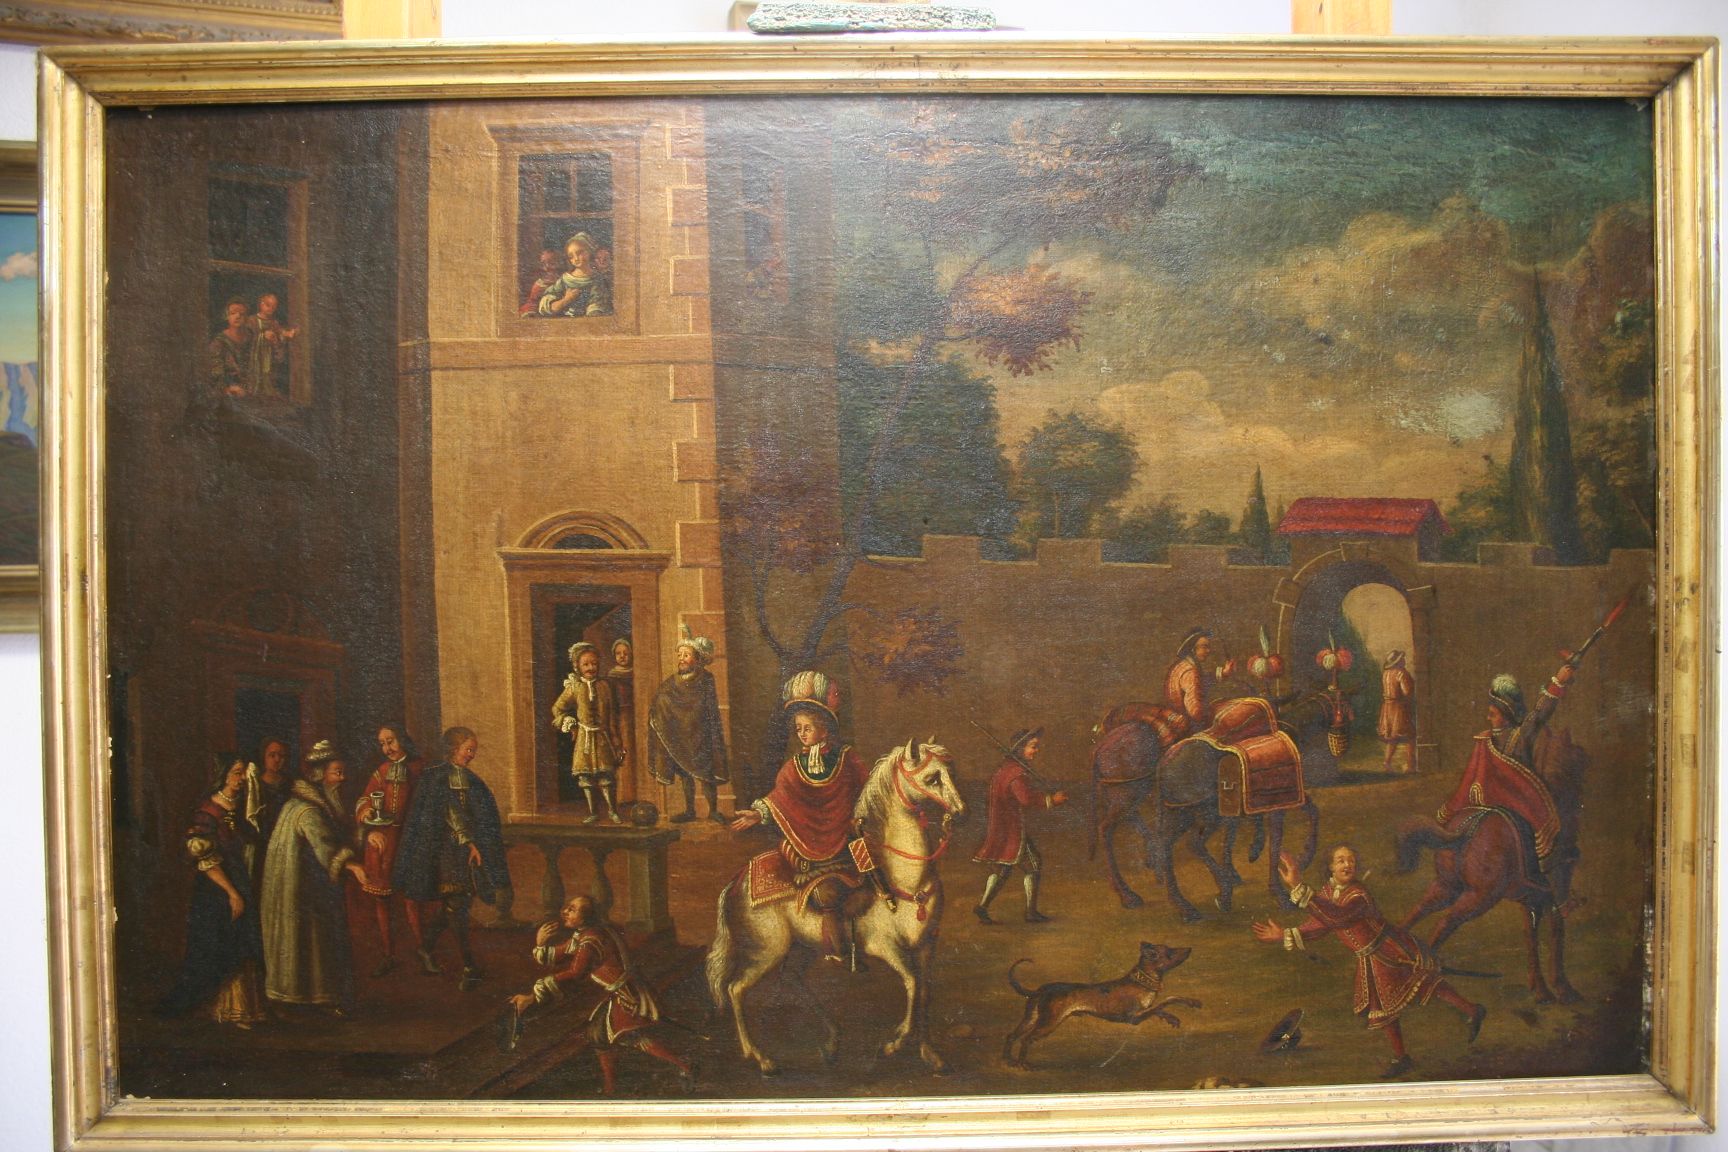 Vor der Restaurierung, Malerei des 16. Jahrhunderts